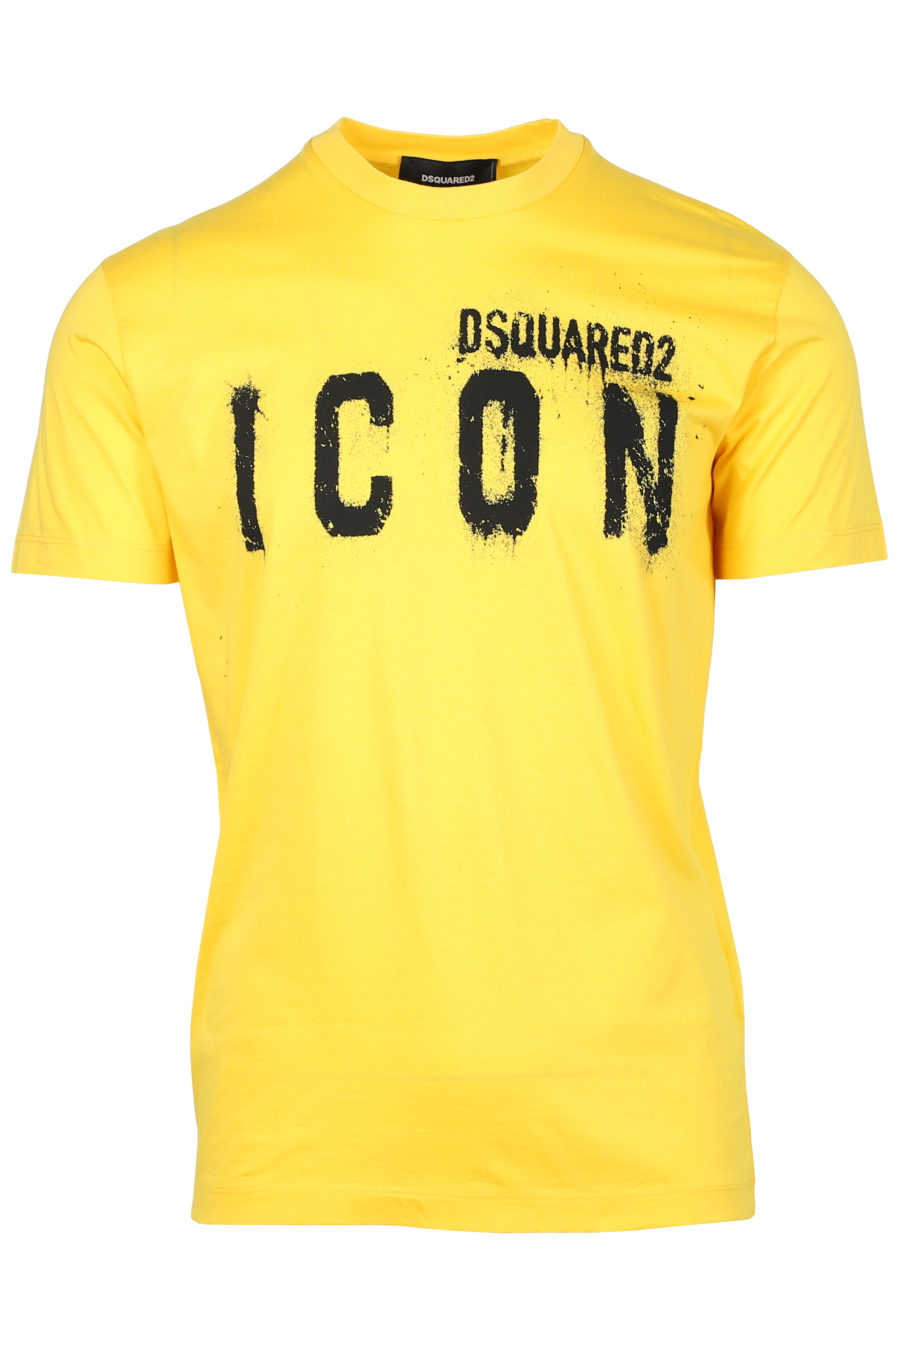 T-shirt jaune avec le logo "Icon Spray" - IMG 2329